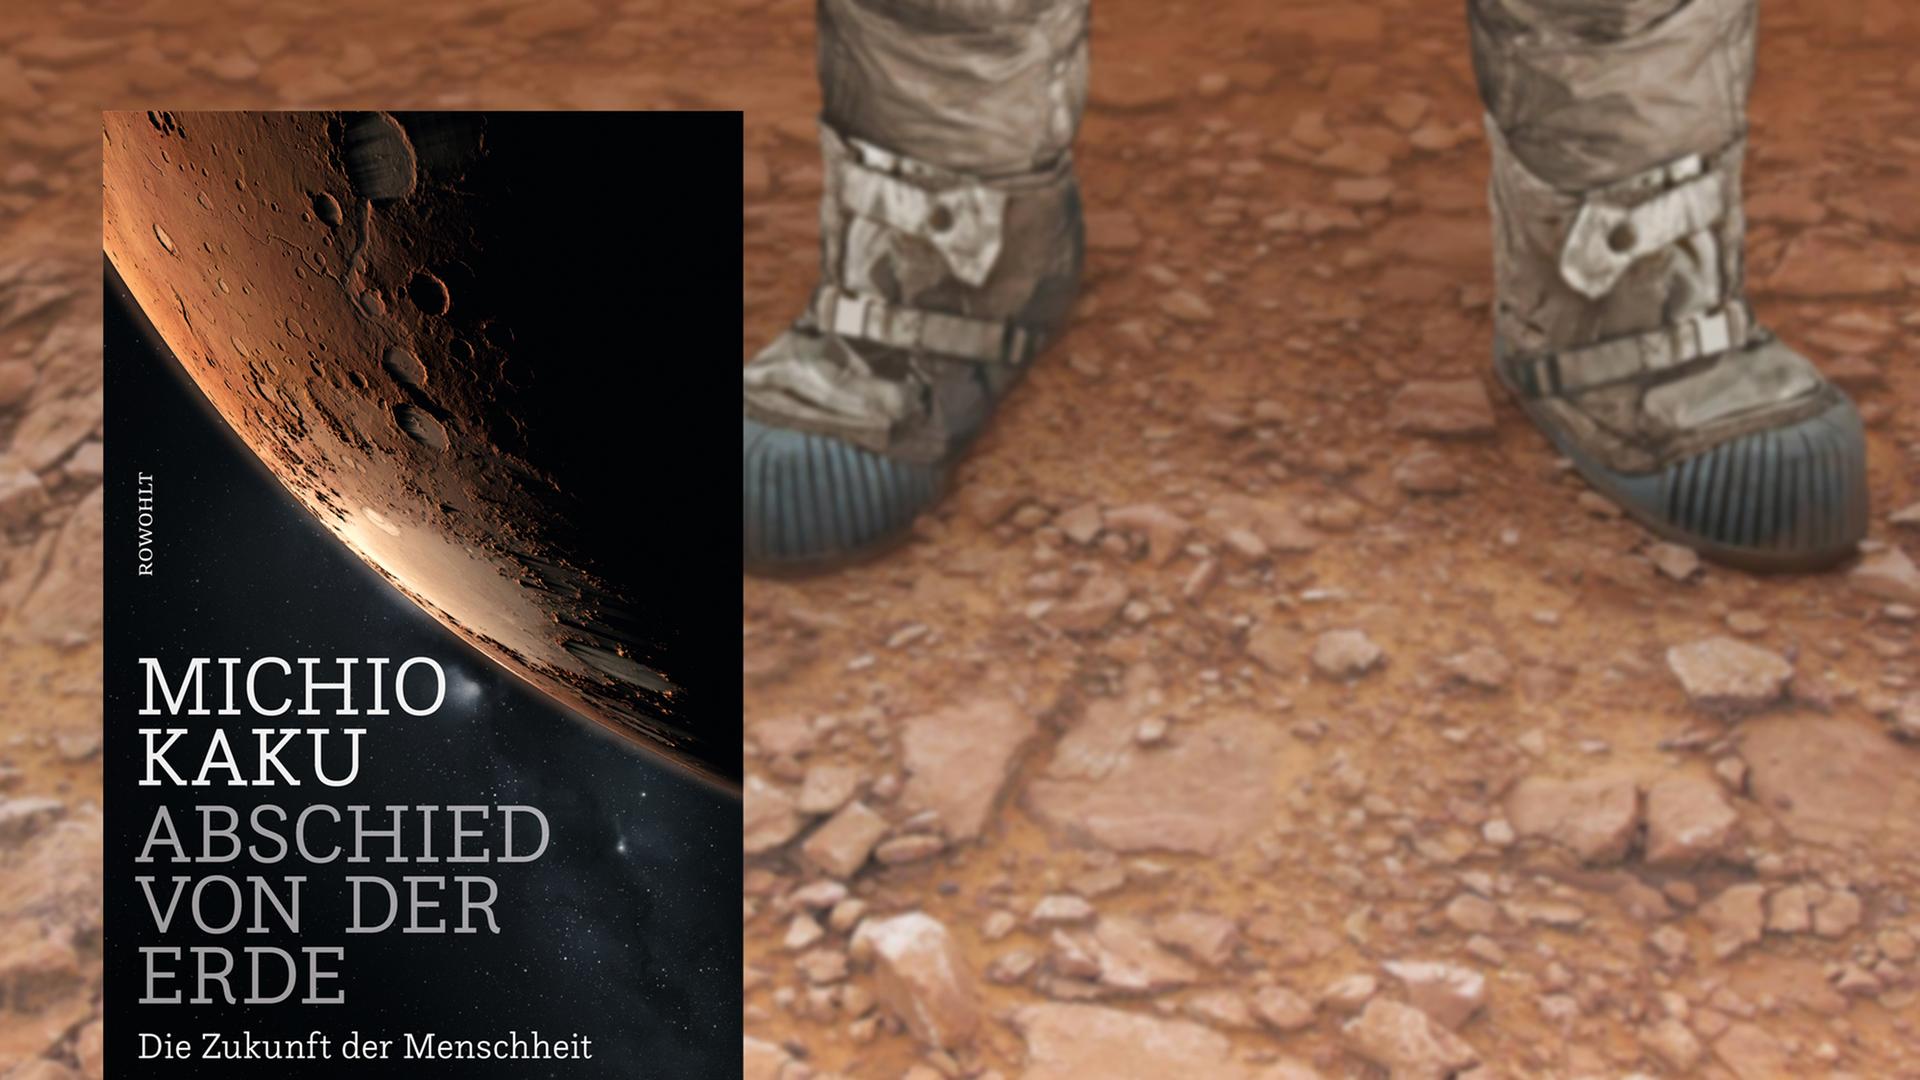 Buchcover "Abschied von der Erde" von Michio Kaku, im Hintergrund sind zwei Füße in Stiefeln zu sehen, die aussehen, als stünden sie auf dem Mars.